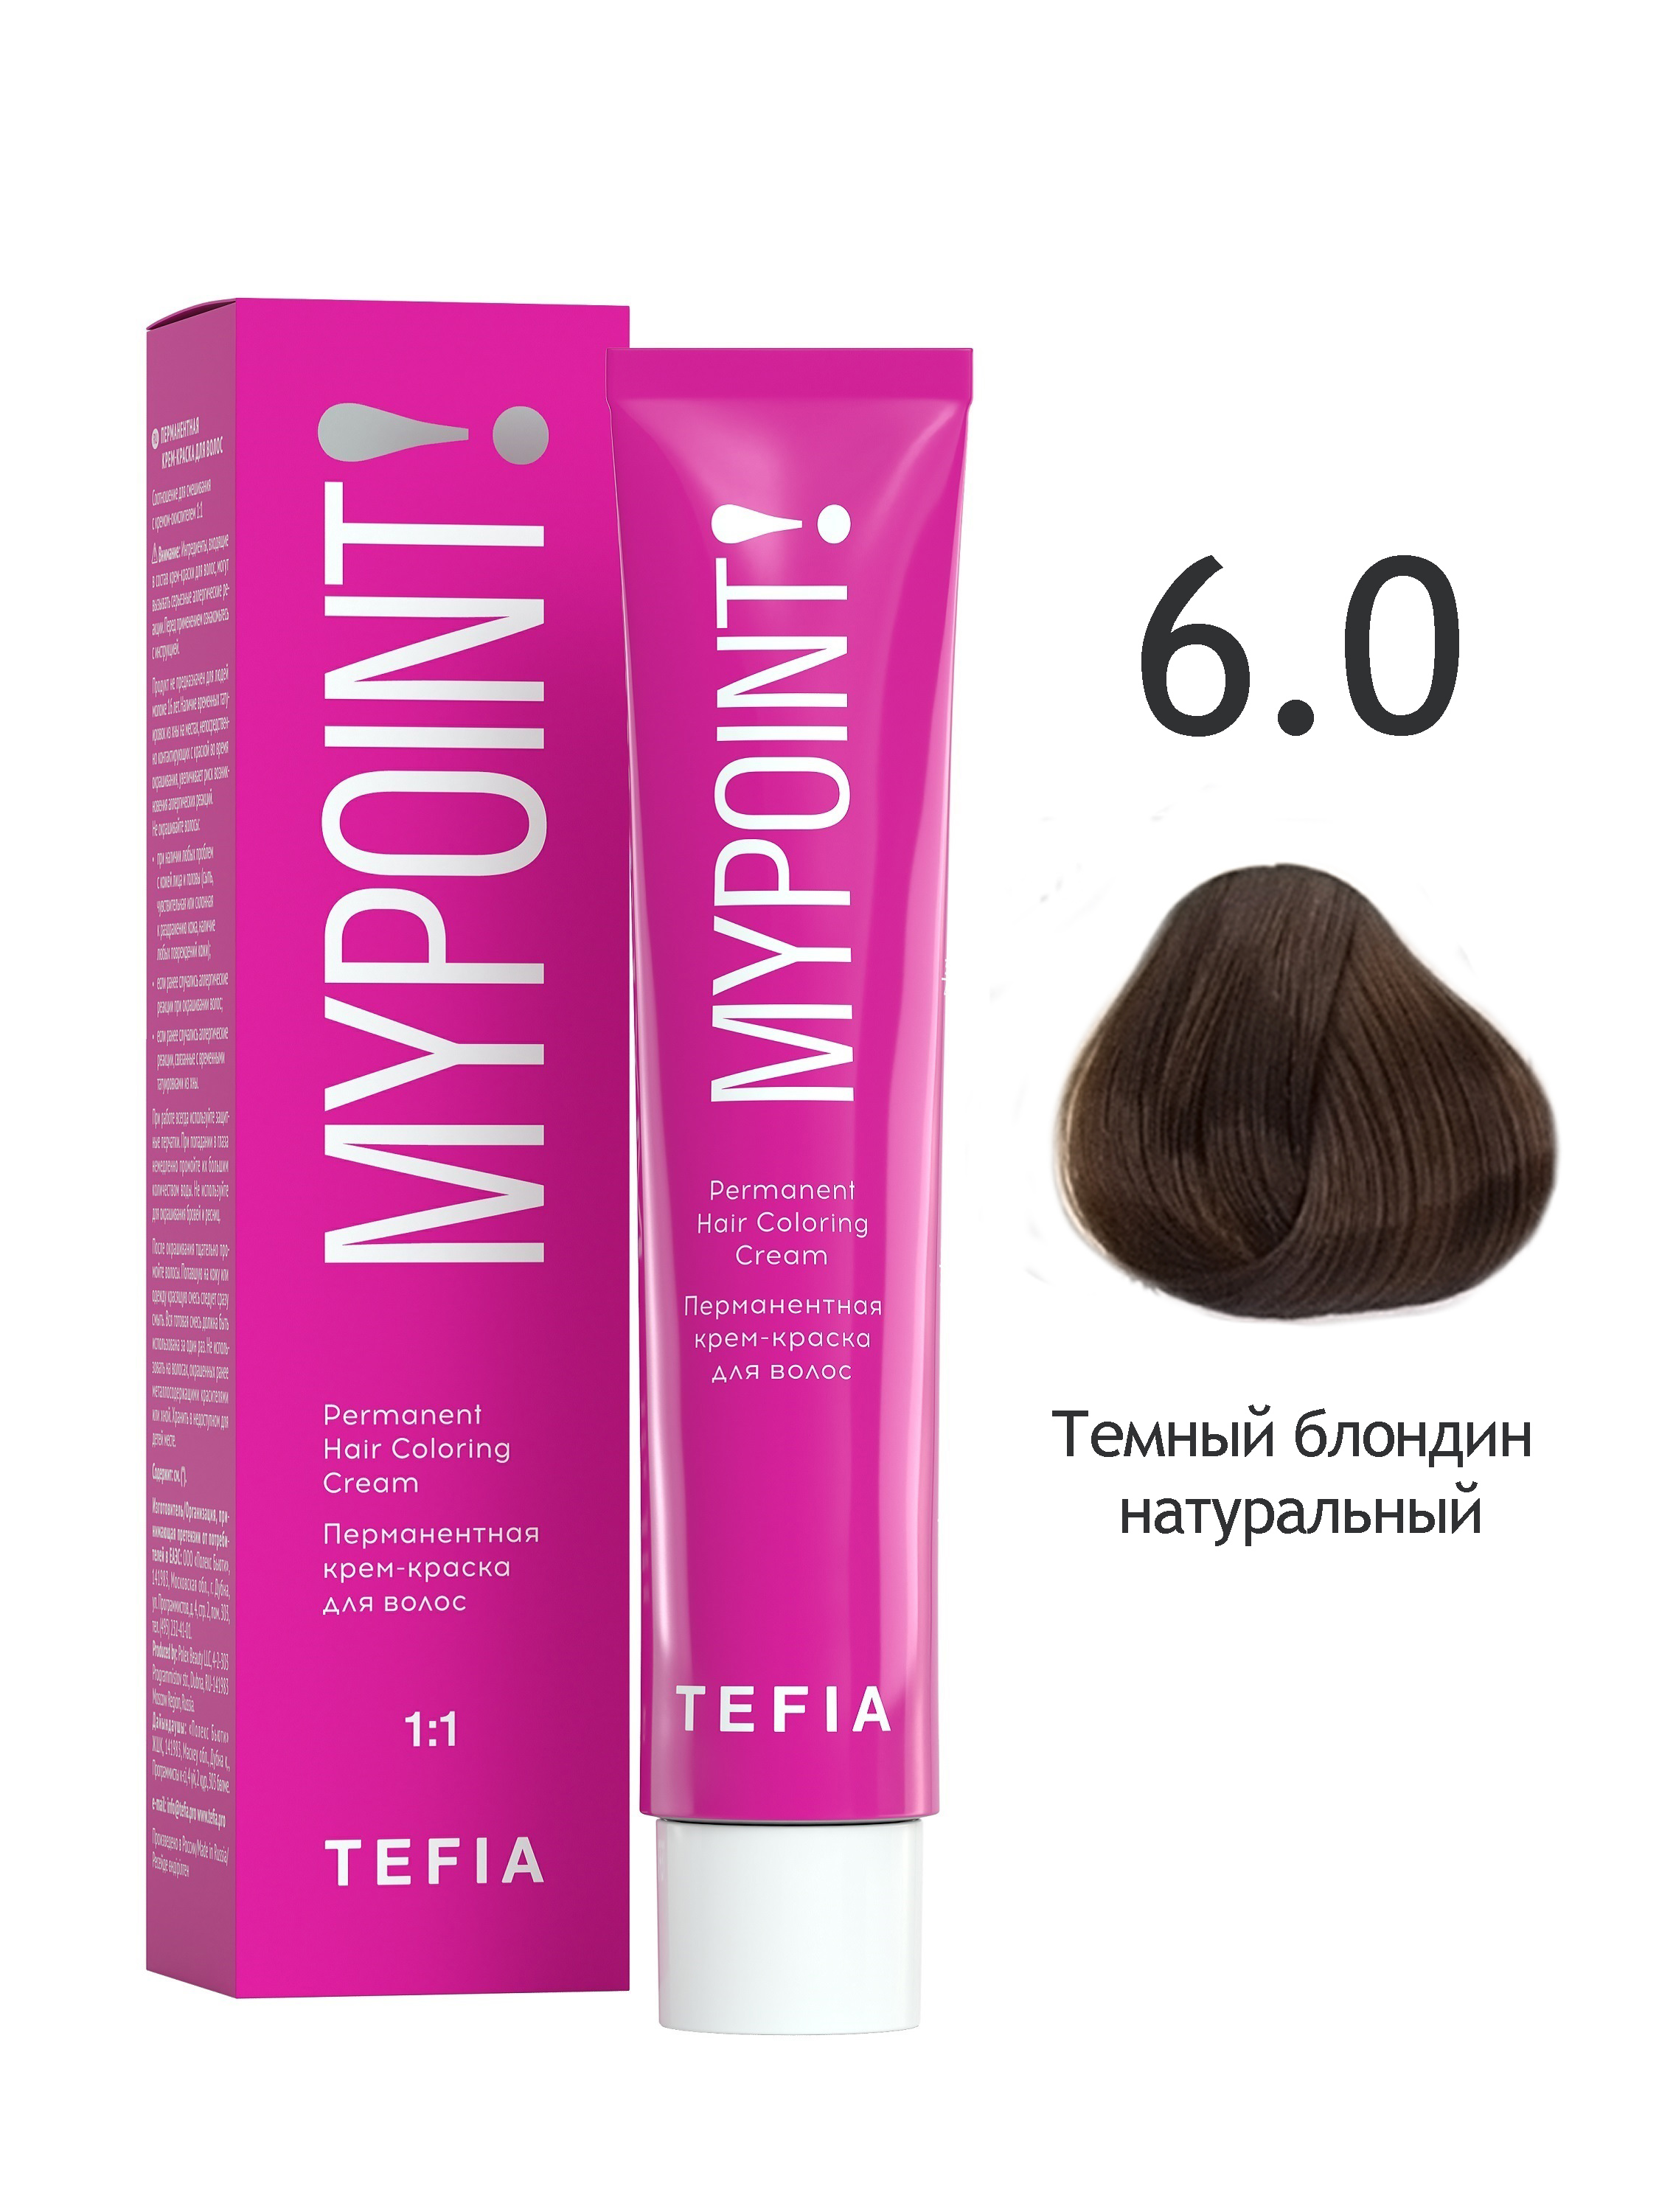 Перманентная крем краска для волос TEFIA MYPOINT 6.0 темный блондин натуральный 60 мл краска schwarzkopf igora royal absolute 6 80 темный русый красный натуральный 60мл